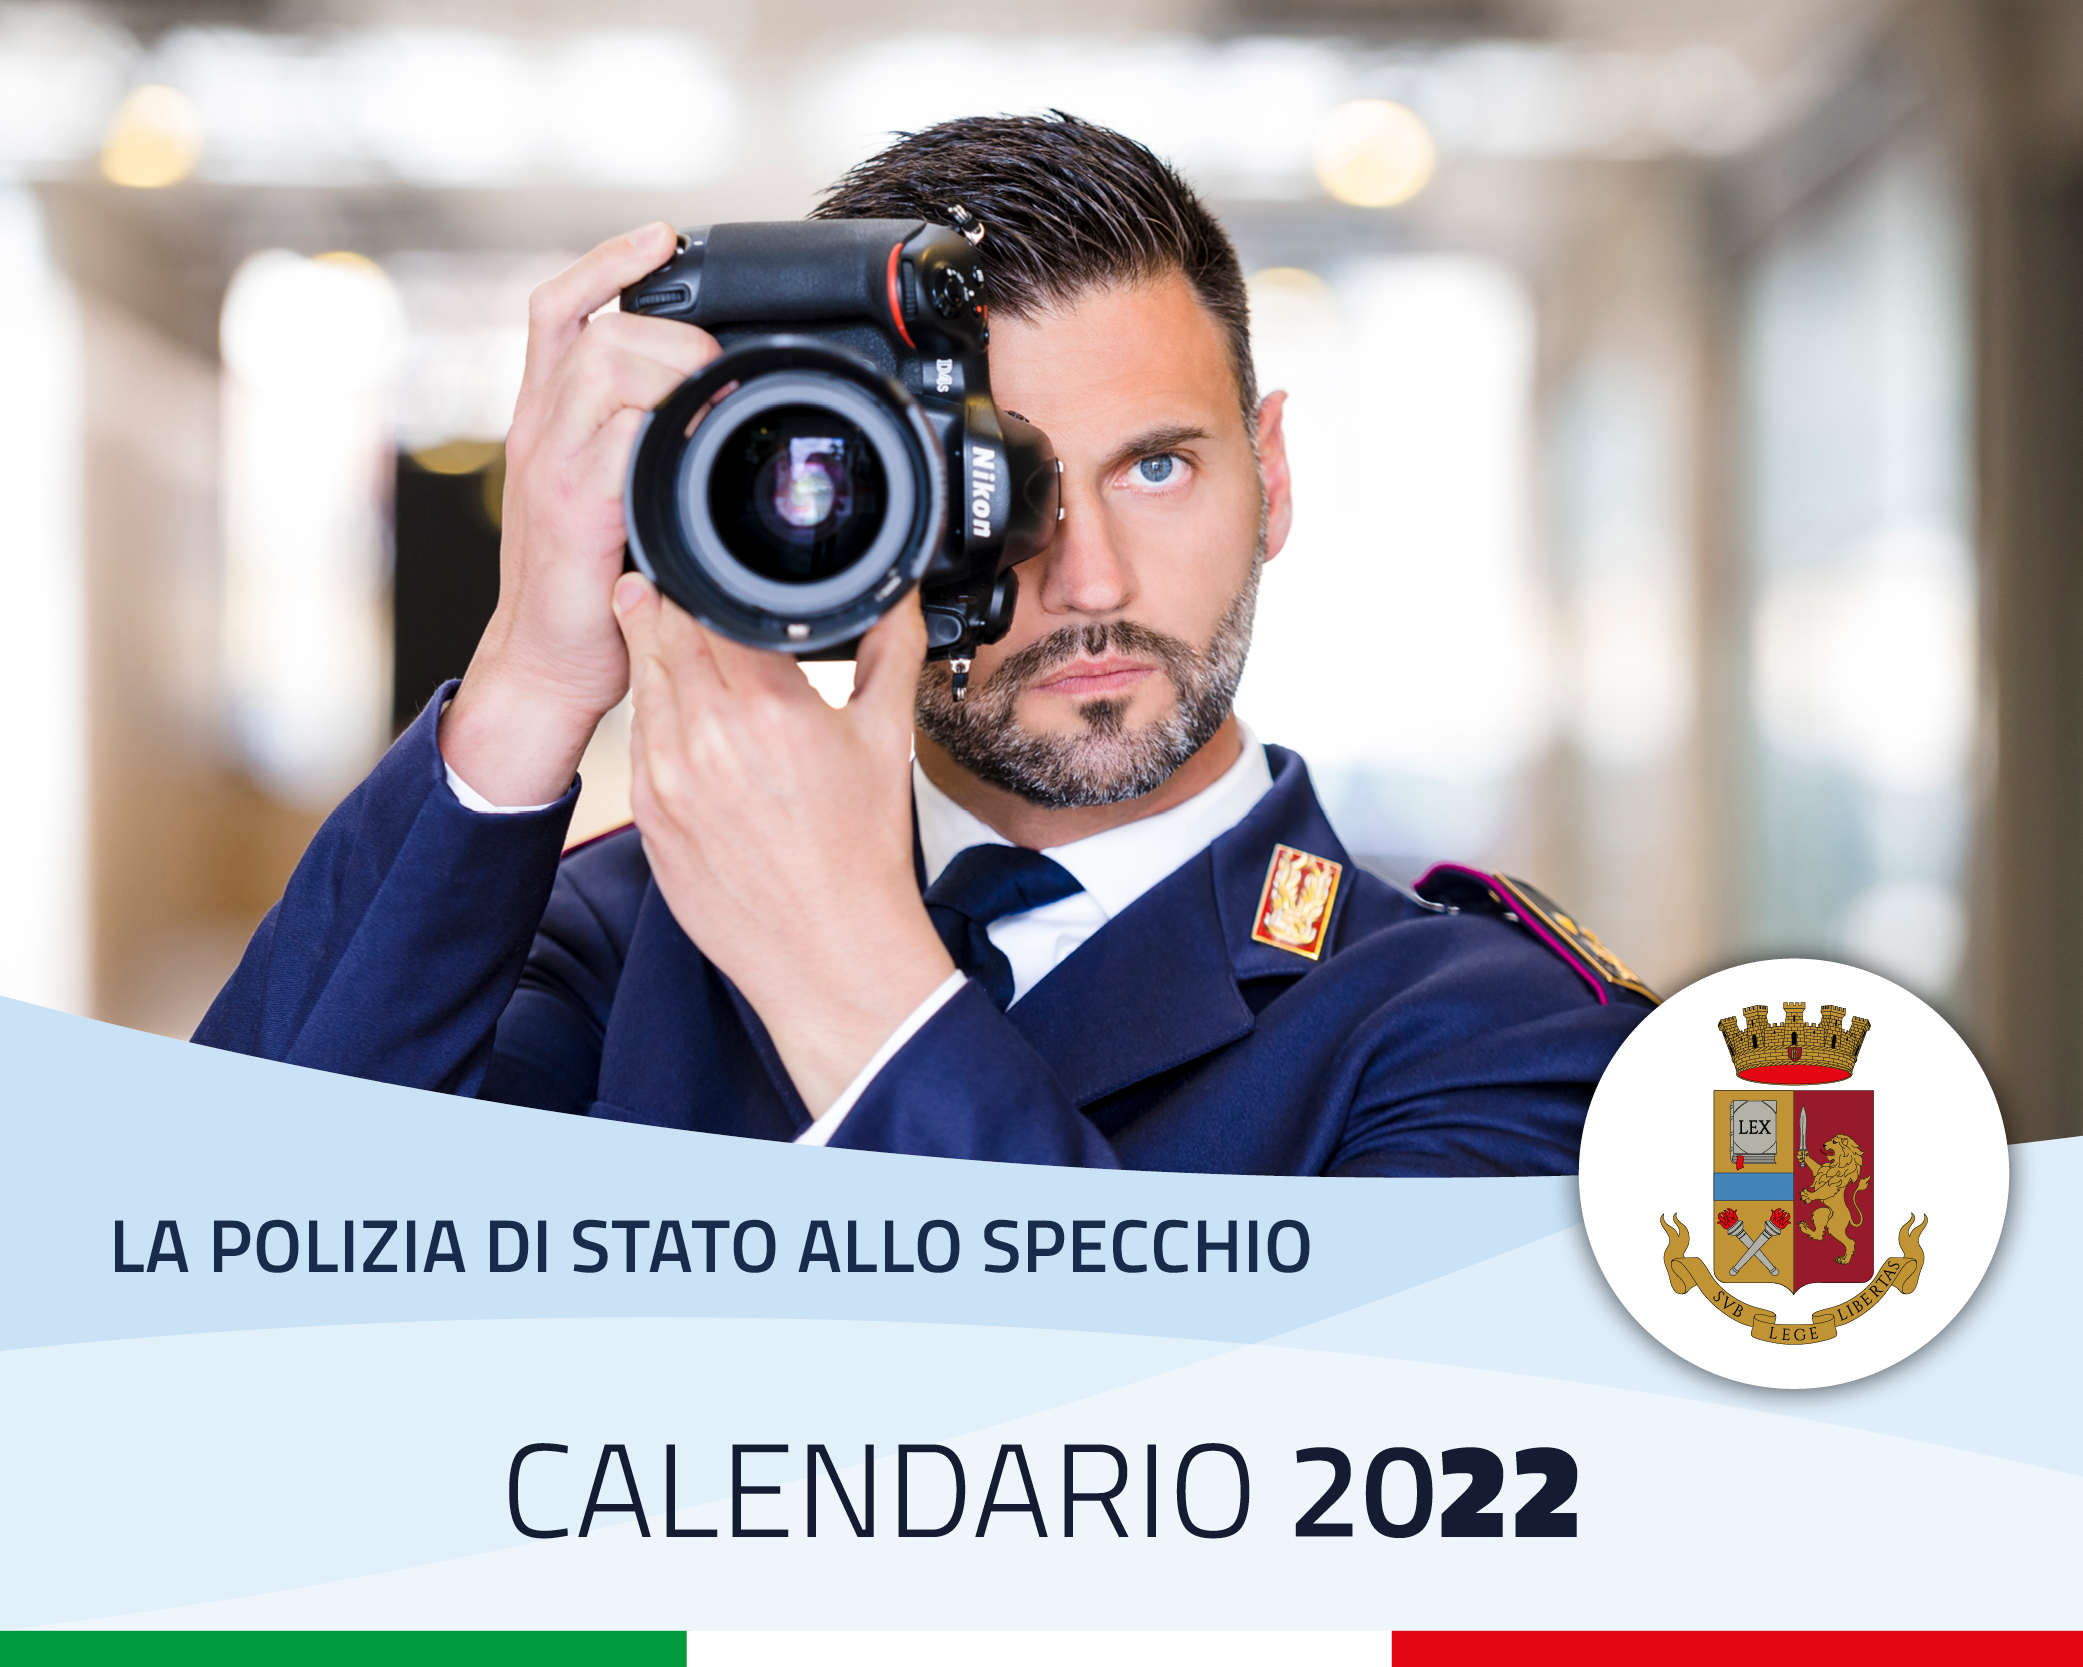 Calendario della Polizia di Stato 2022